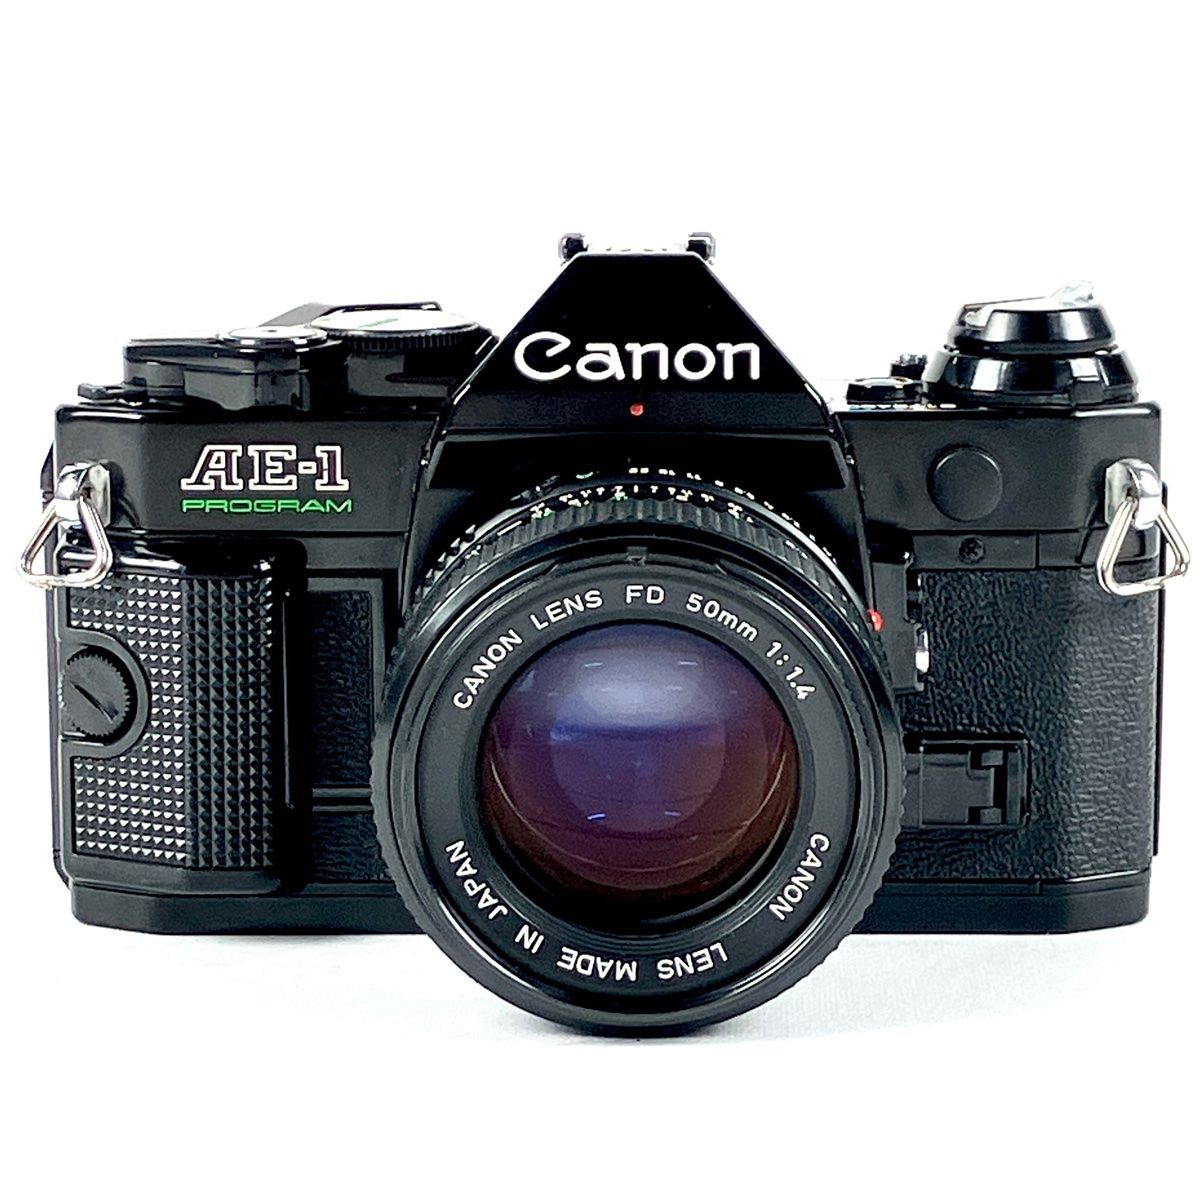 キヤノン Canon AE-1 PROGRAM + NEW FD 50mm F1.4 フィルム マニュアル